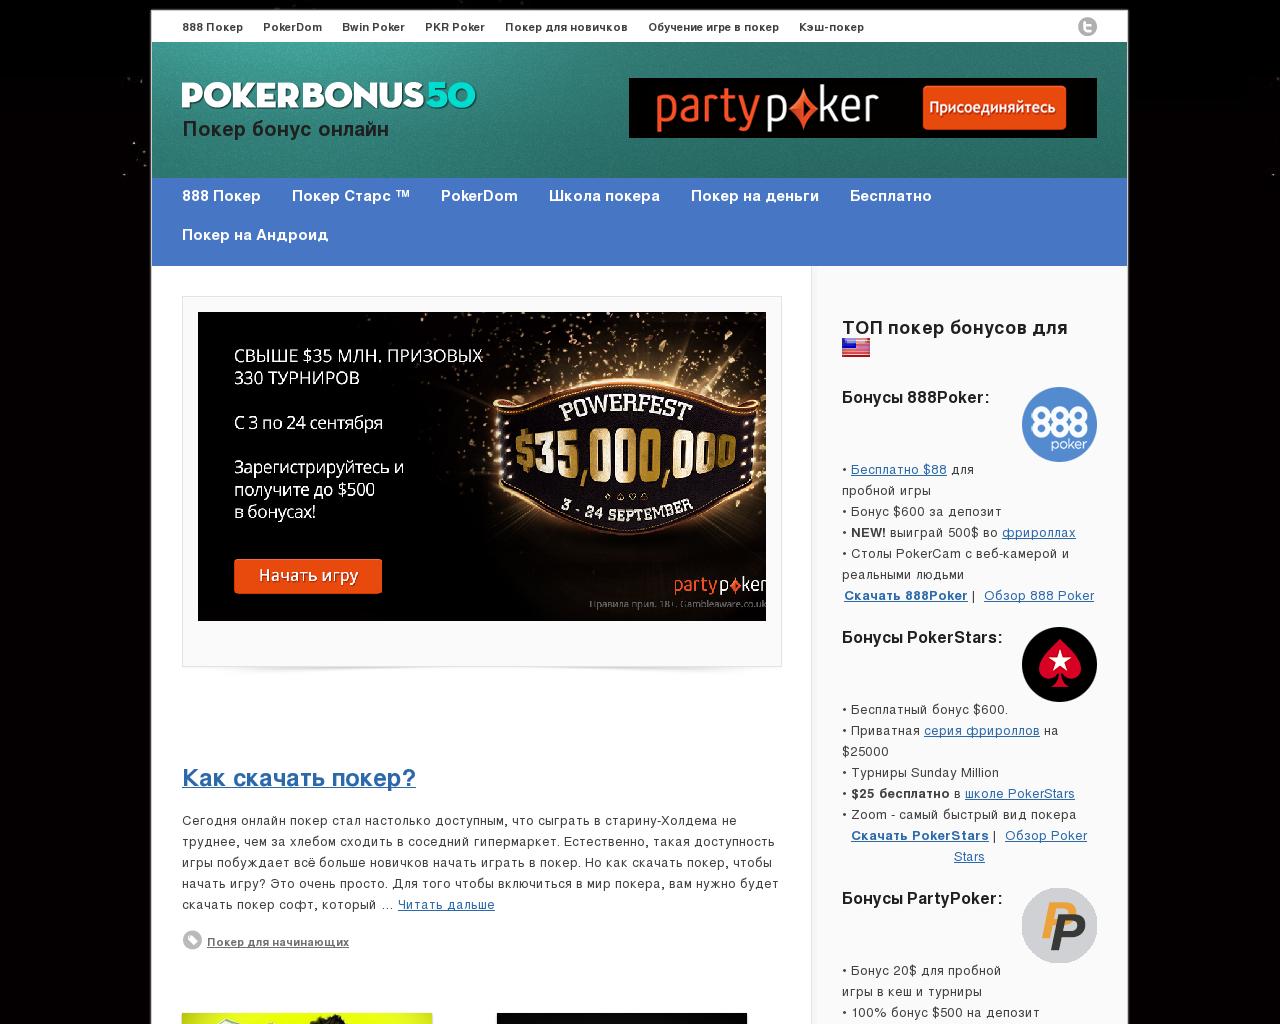 Покер дом вход покердом 24 хомс. Покер на реальные деньги. 888 Покер как играть. Казино Pokerdom бонусы для новичков.